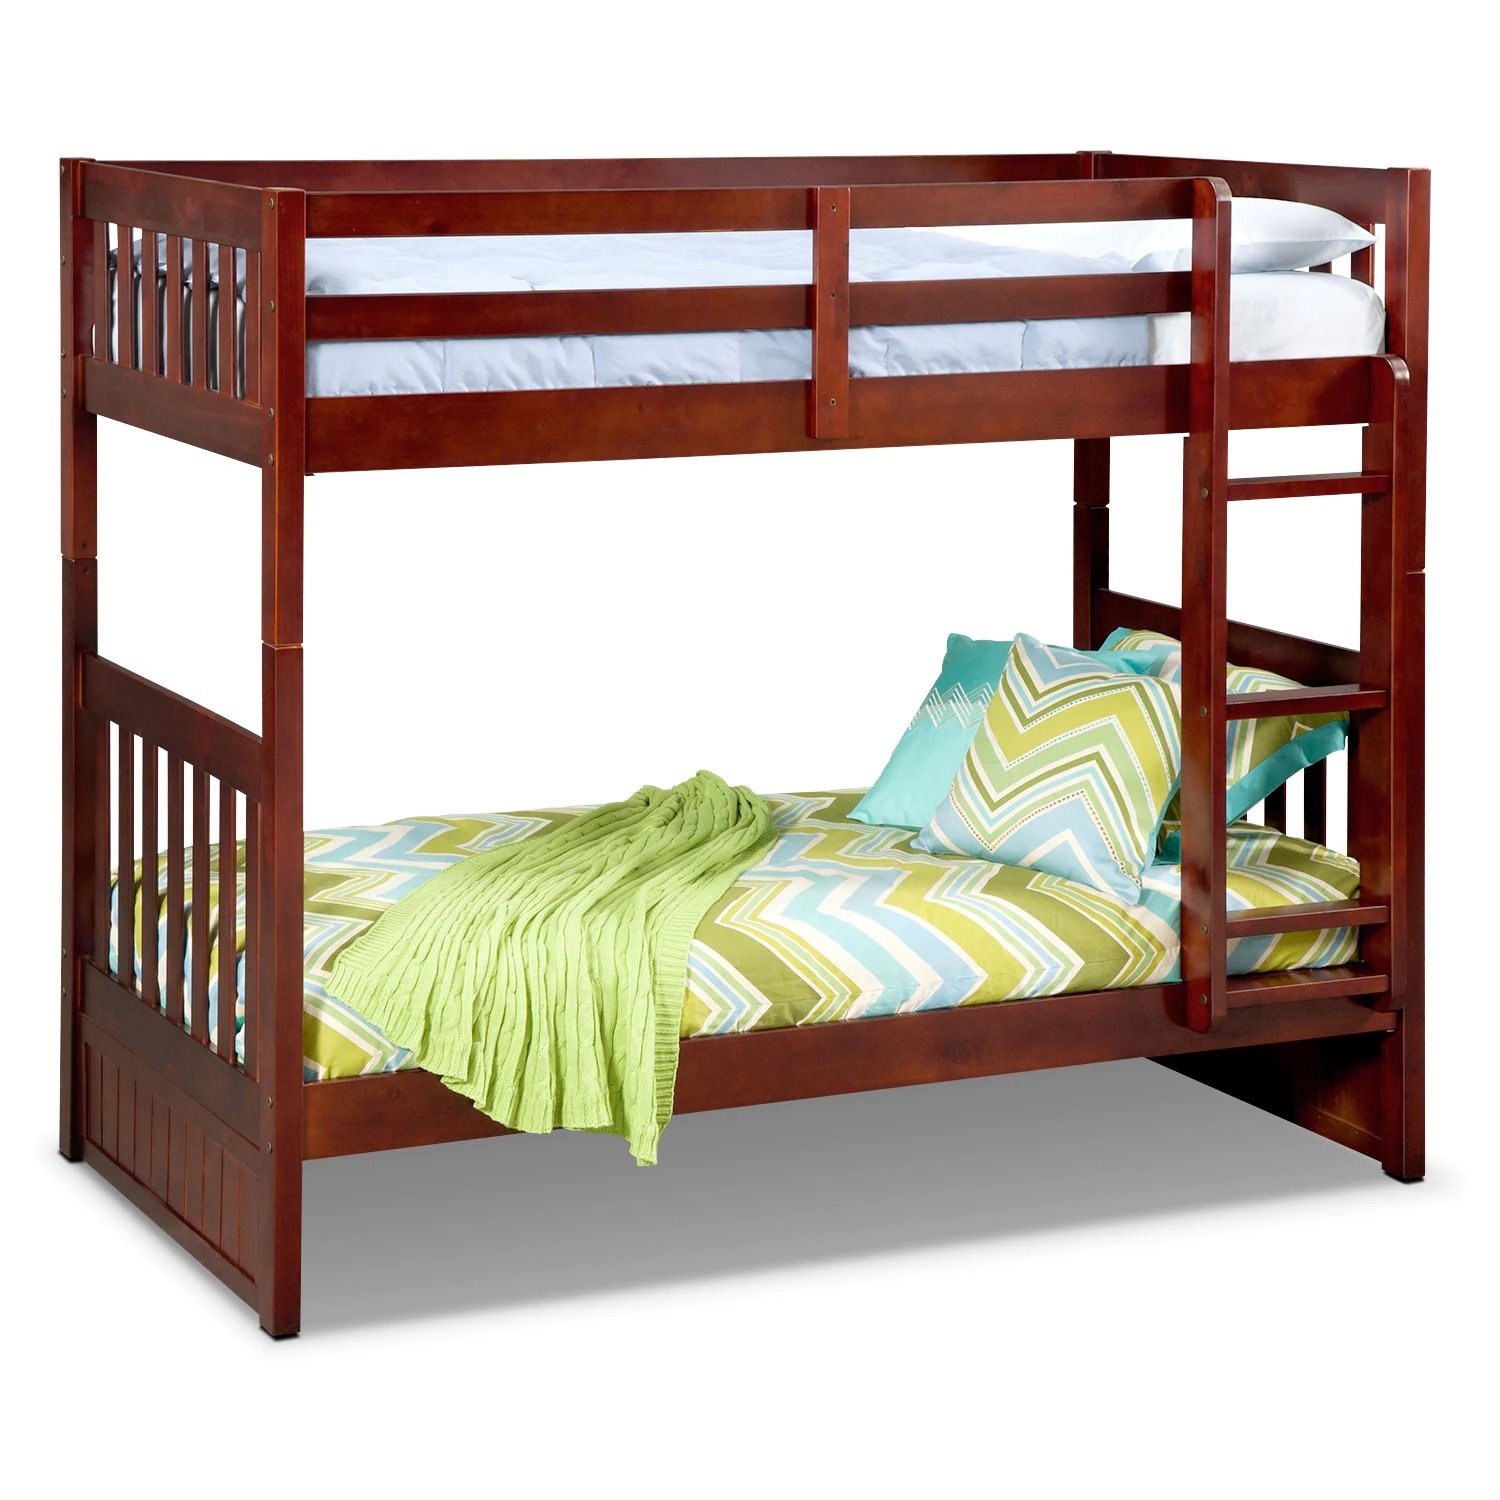 giường tầng cho bé gỗ thông nhỏ gọn hiện đại